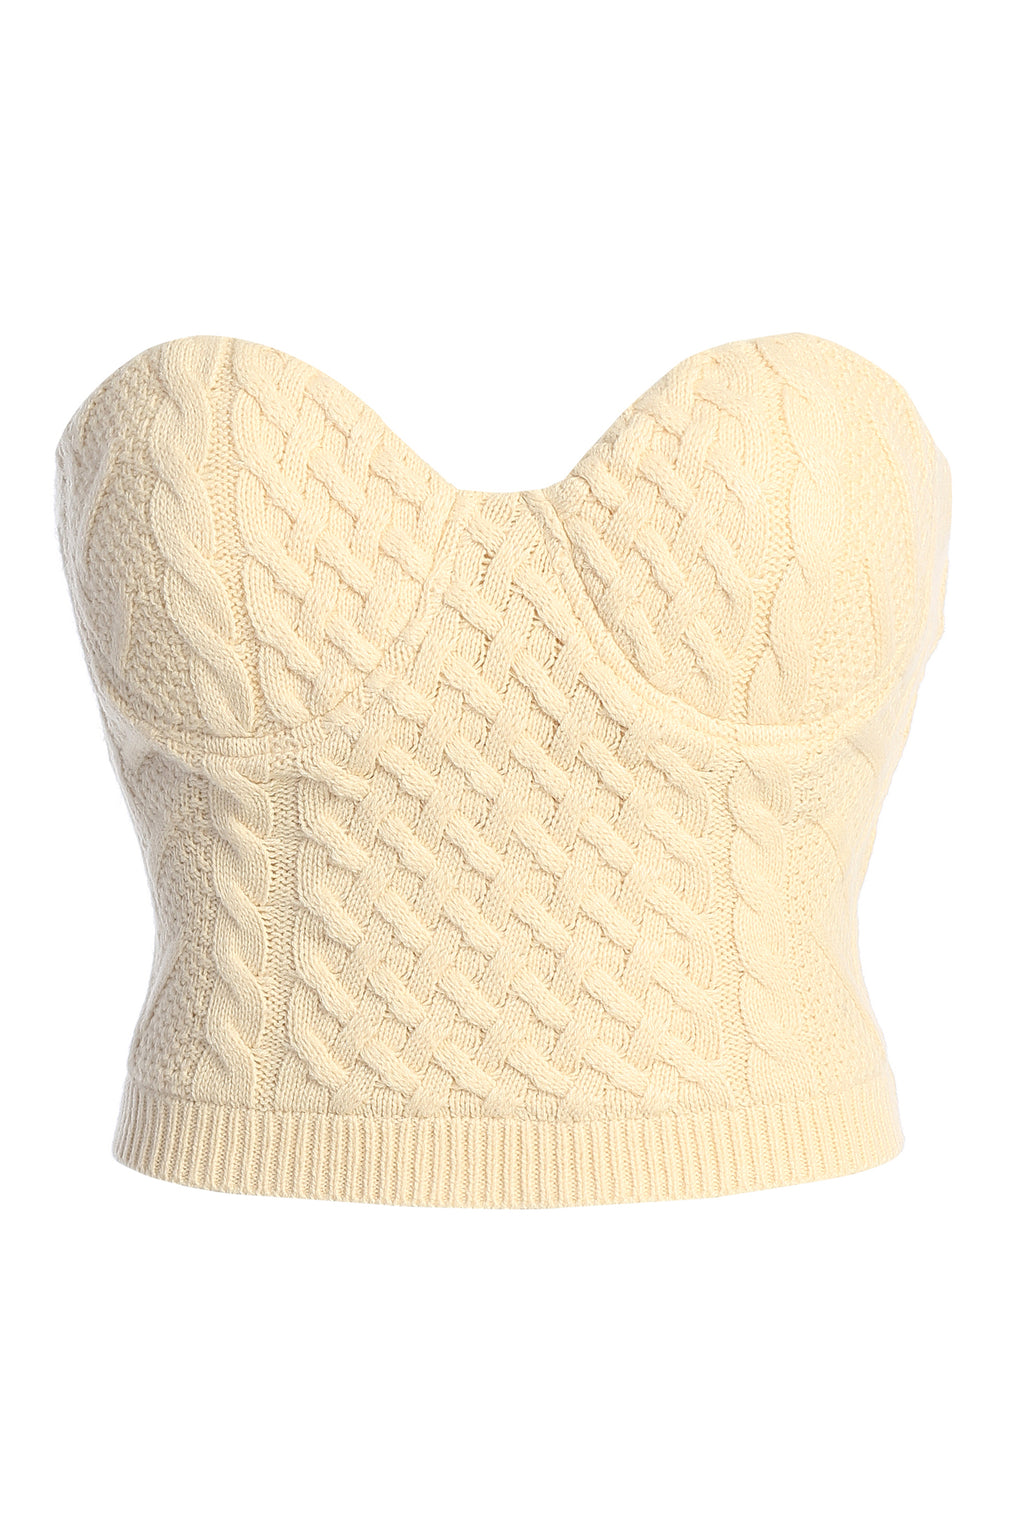 Buttercream Davina Sweater Knit Bustier Top – JLUXLABEL